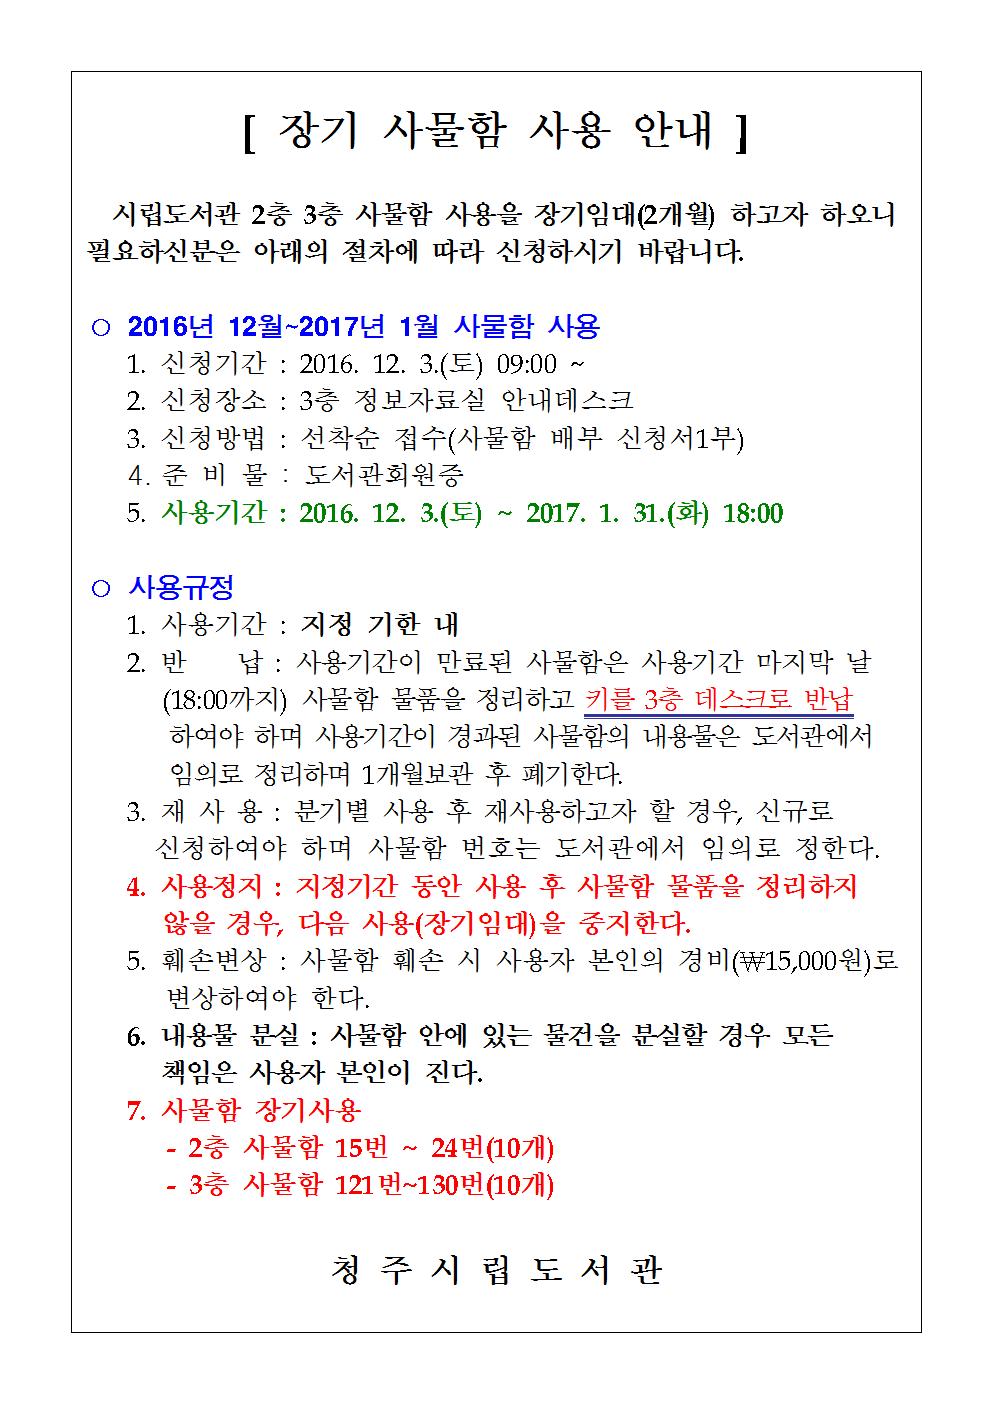 청주시립도서관 사물함 장기사용(2016. 12월 ~ 2017. 1월) 신청안내